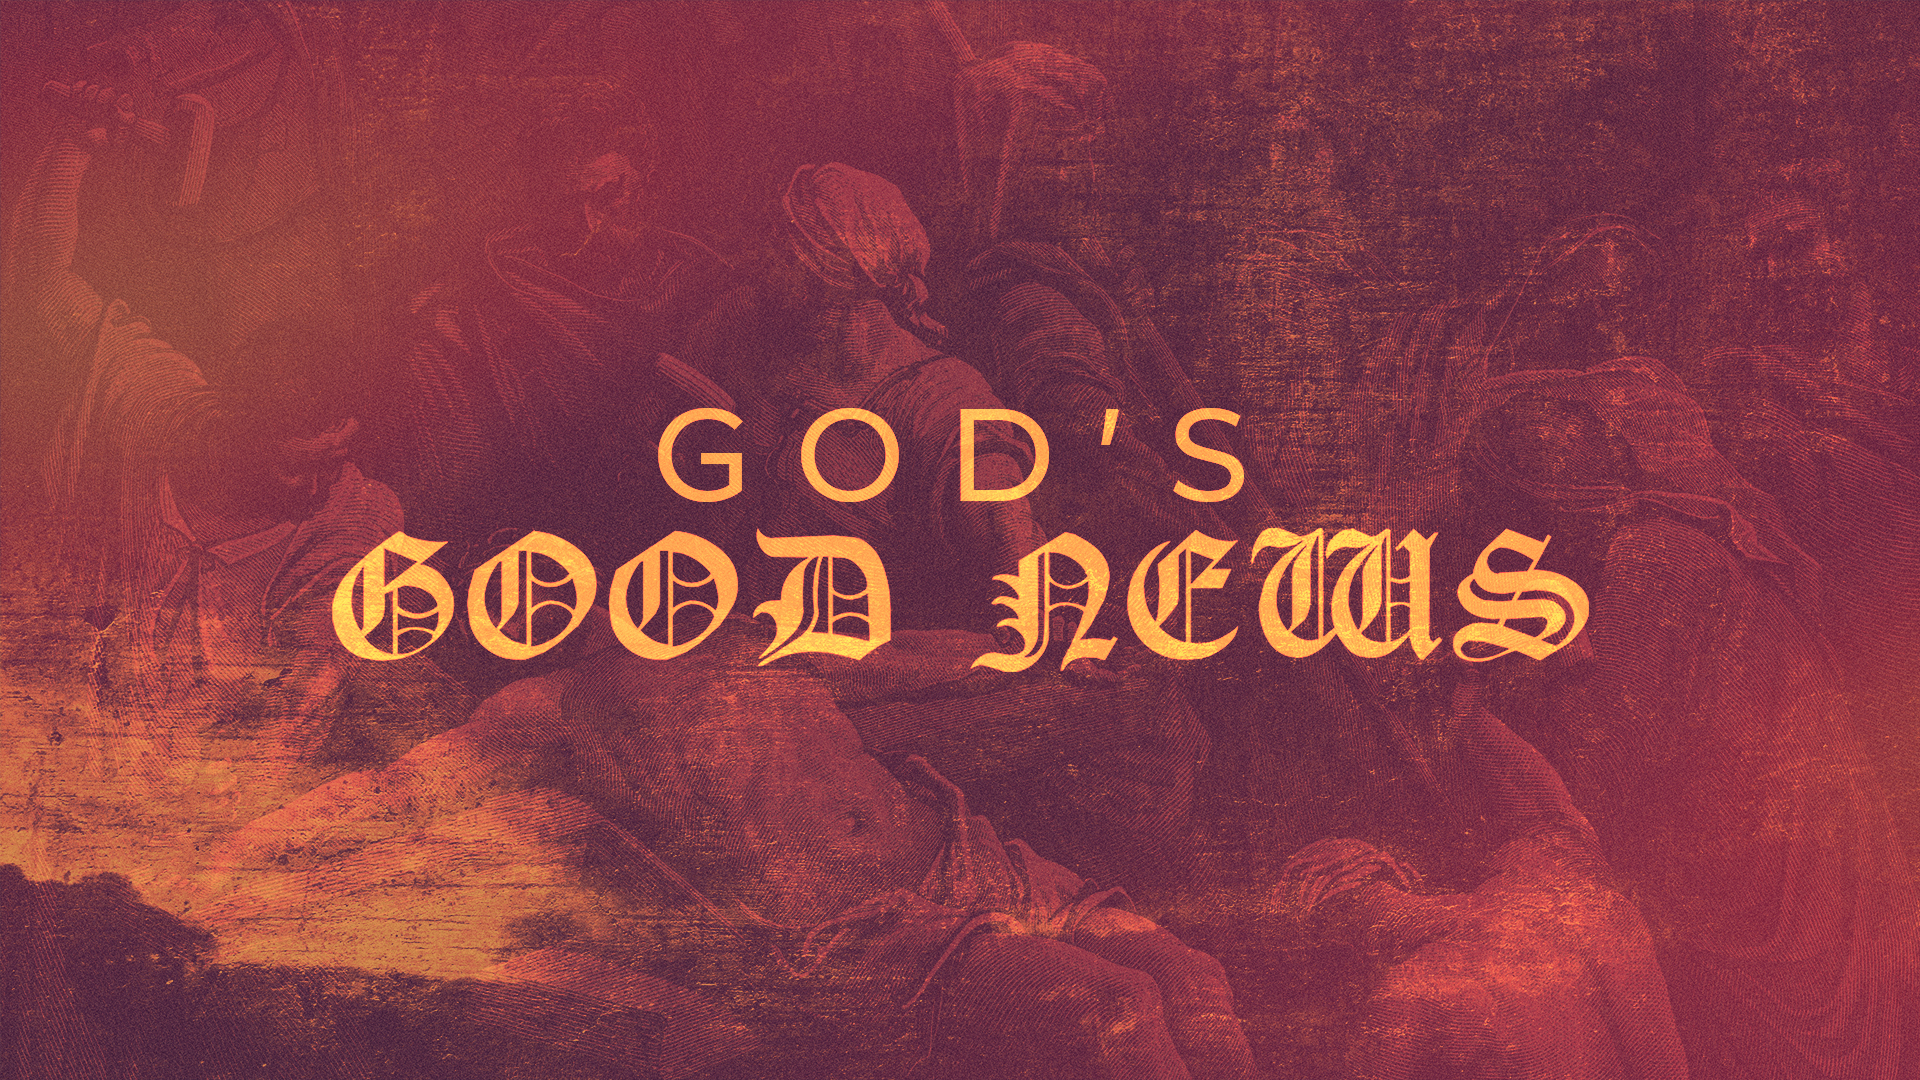 God's Good News Image